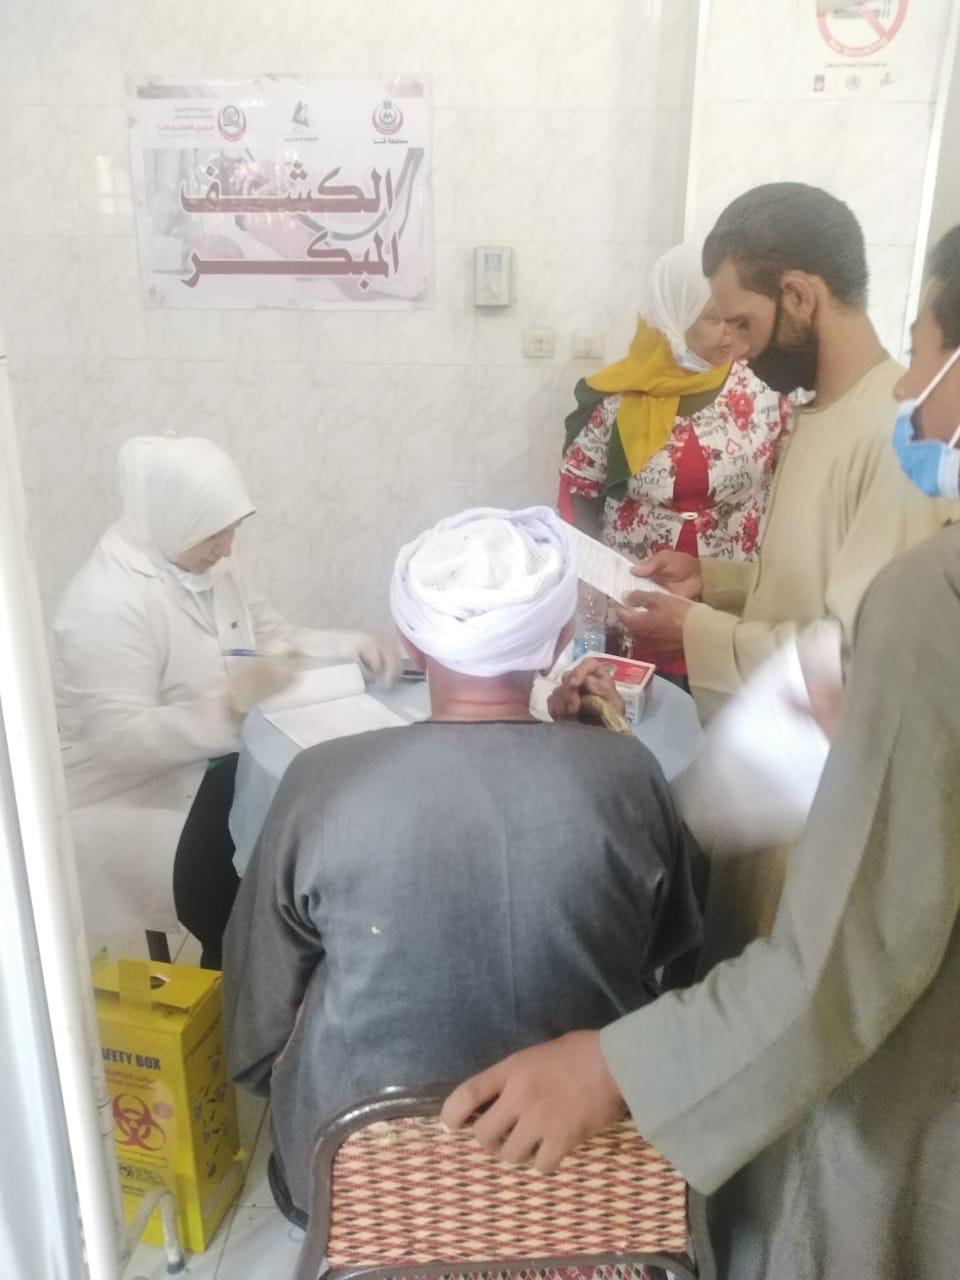   الكشف على ٩٩٥ حالة خلال القافلة الطبية بنجع الحىّ بمدينة قنا